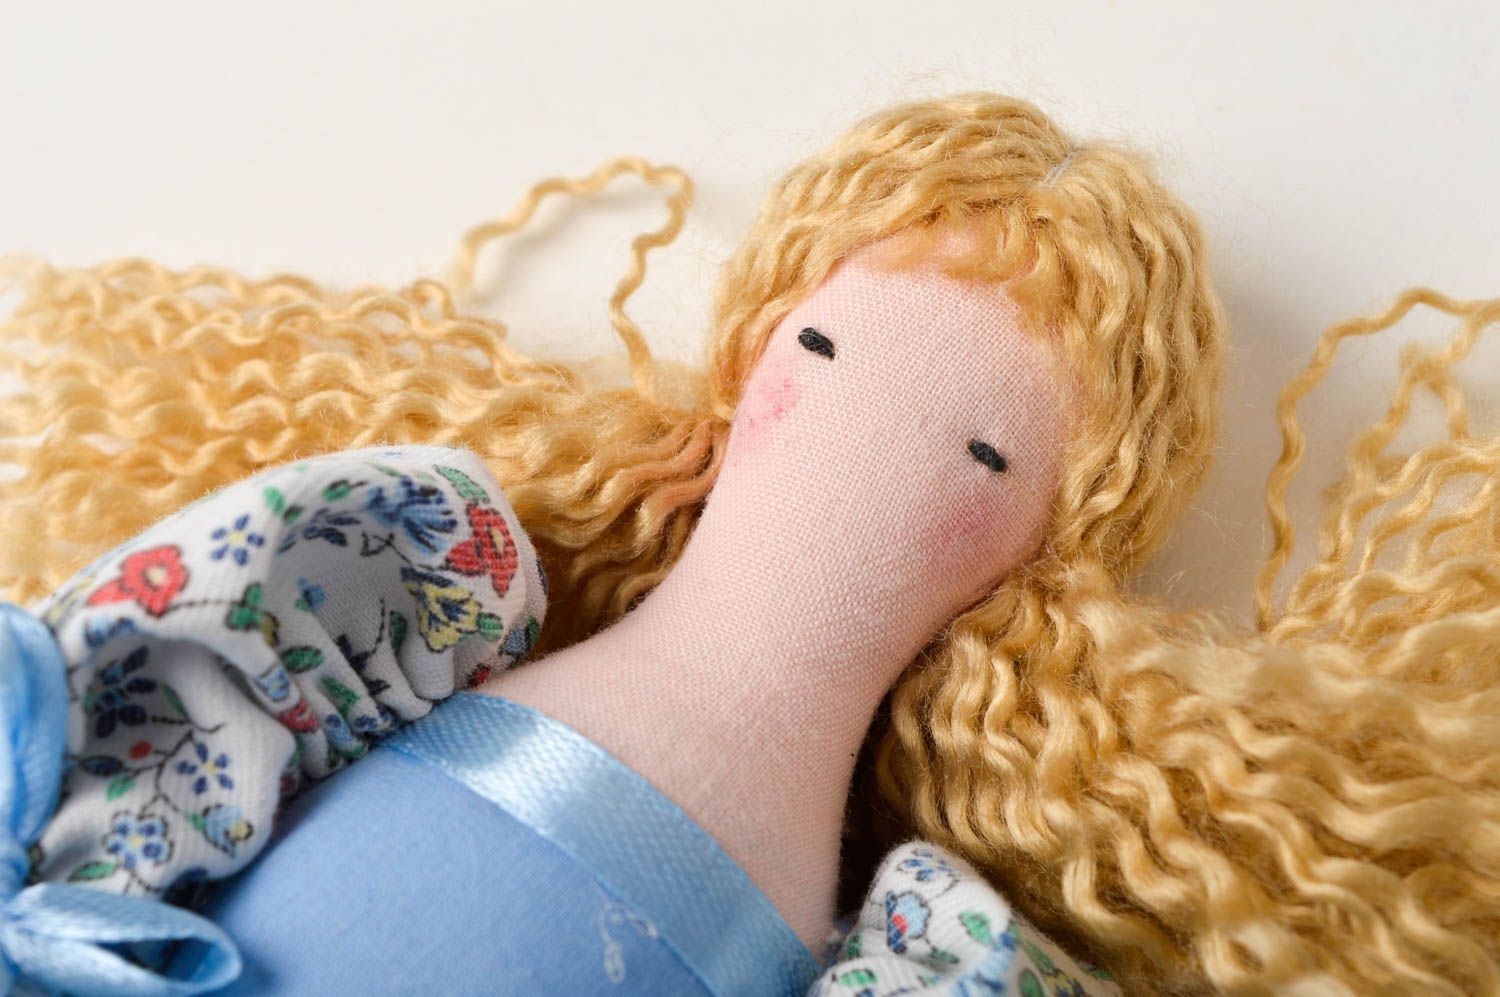 Handmade lockige Designer Puppe Stoff Spielzeug künstlerische schöne Puppe foto 5